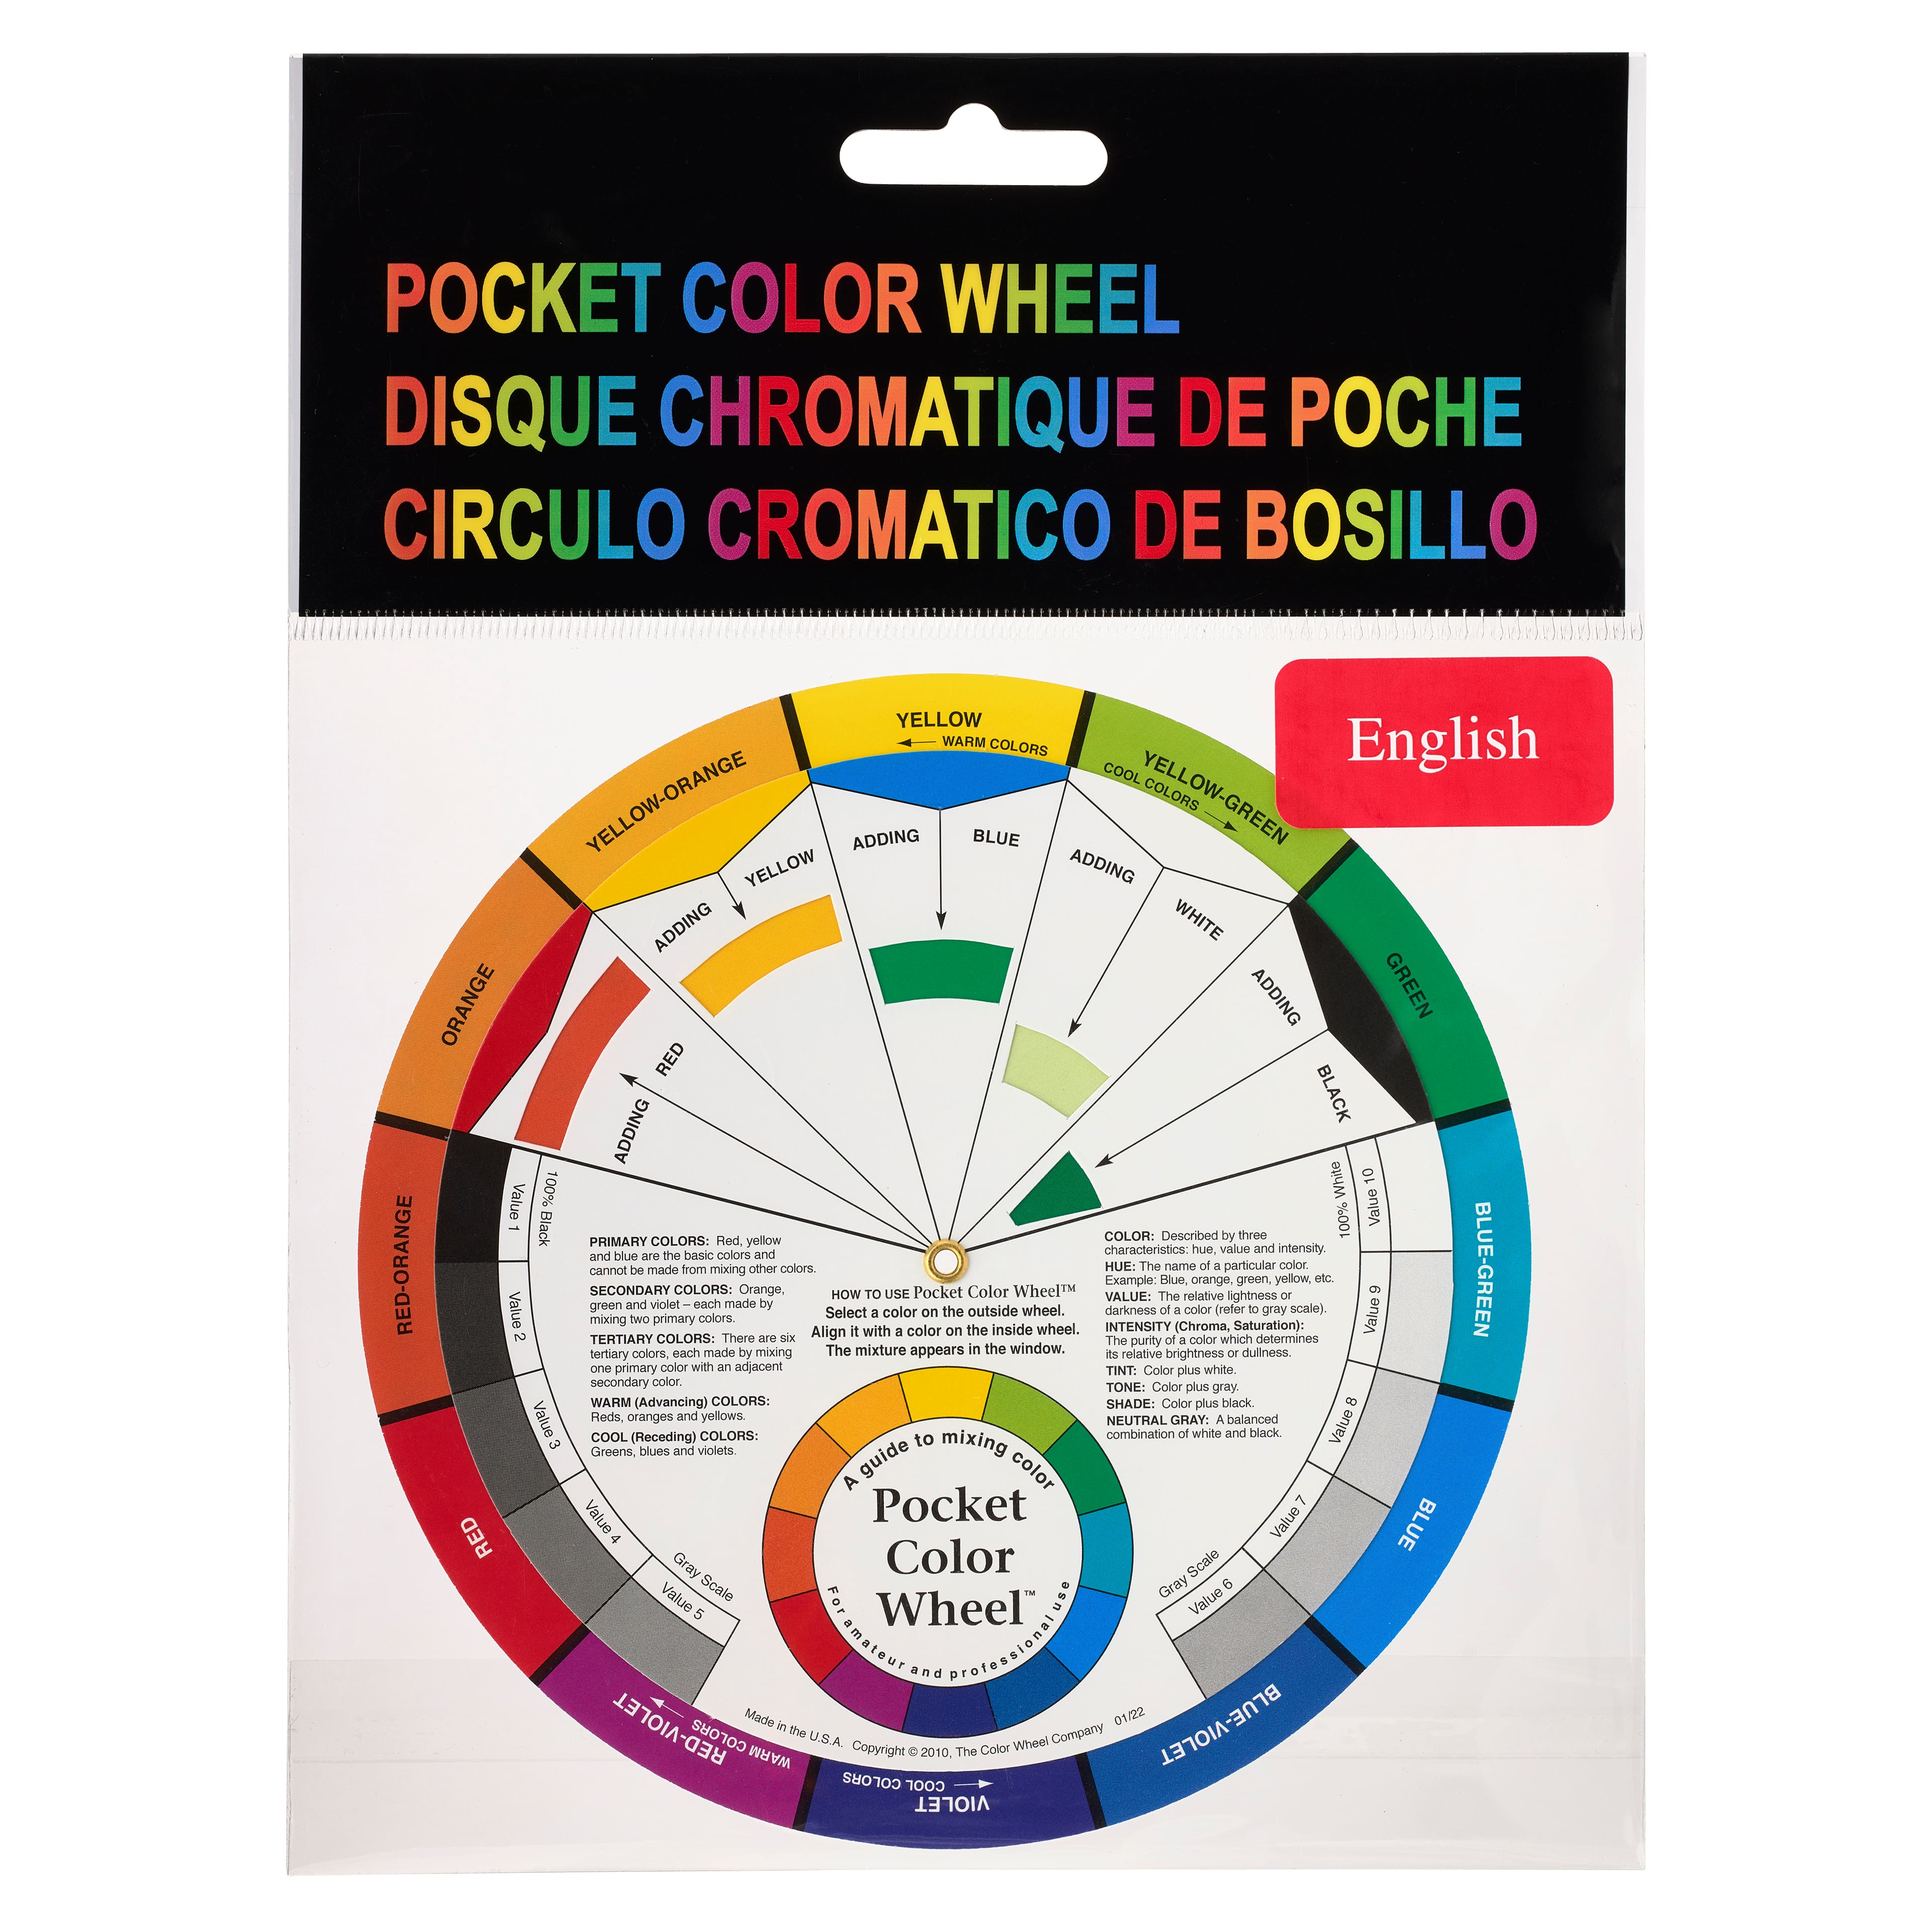 Pocket Color Wheel™